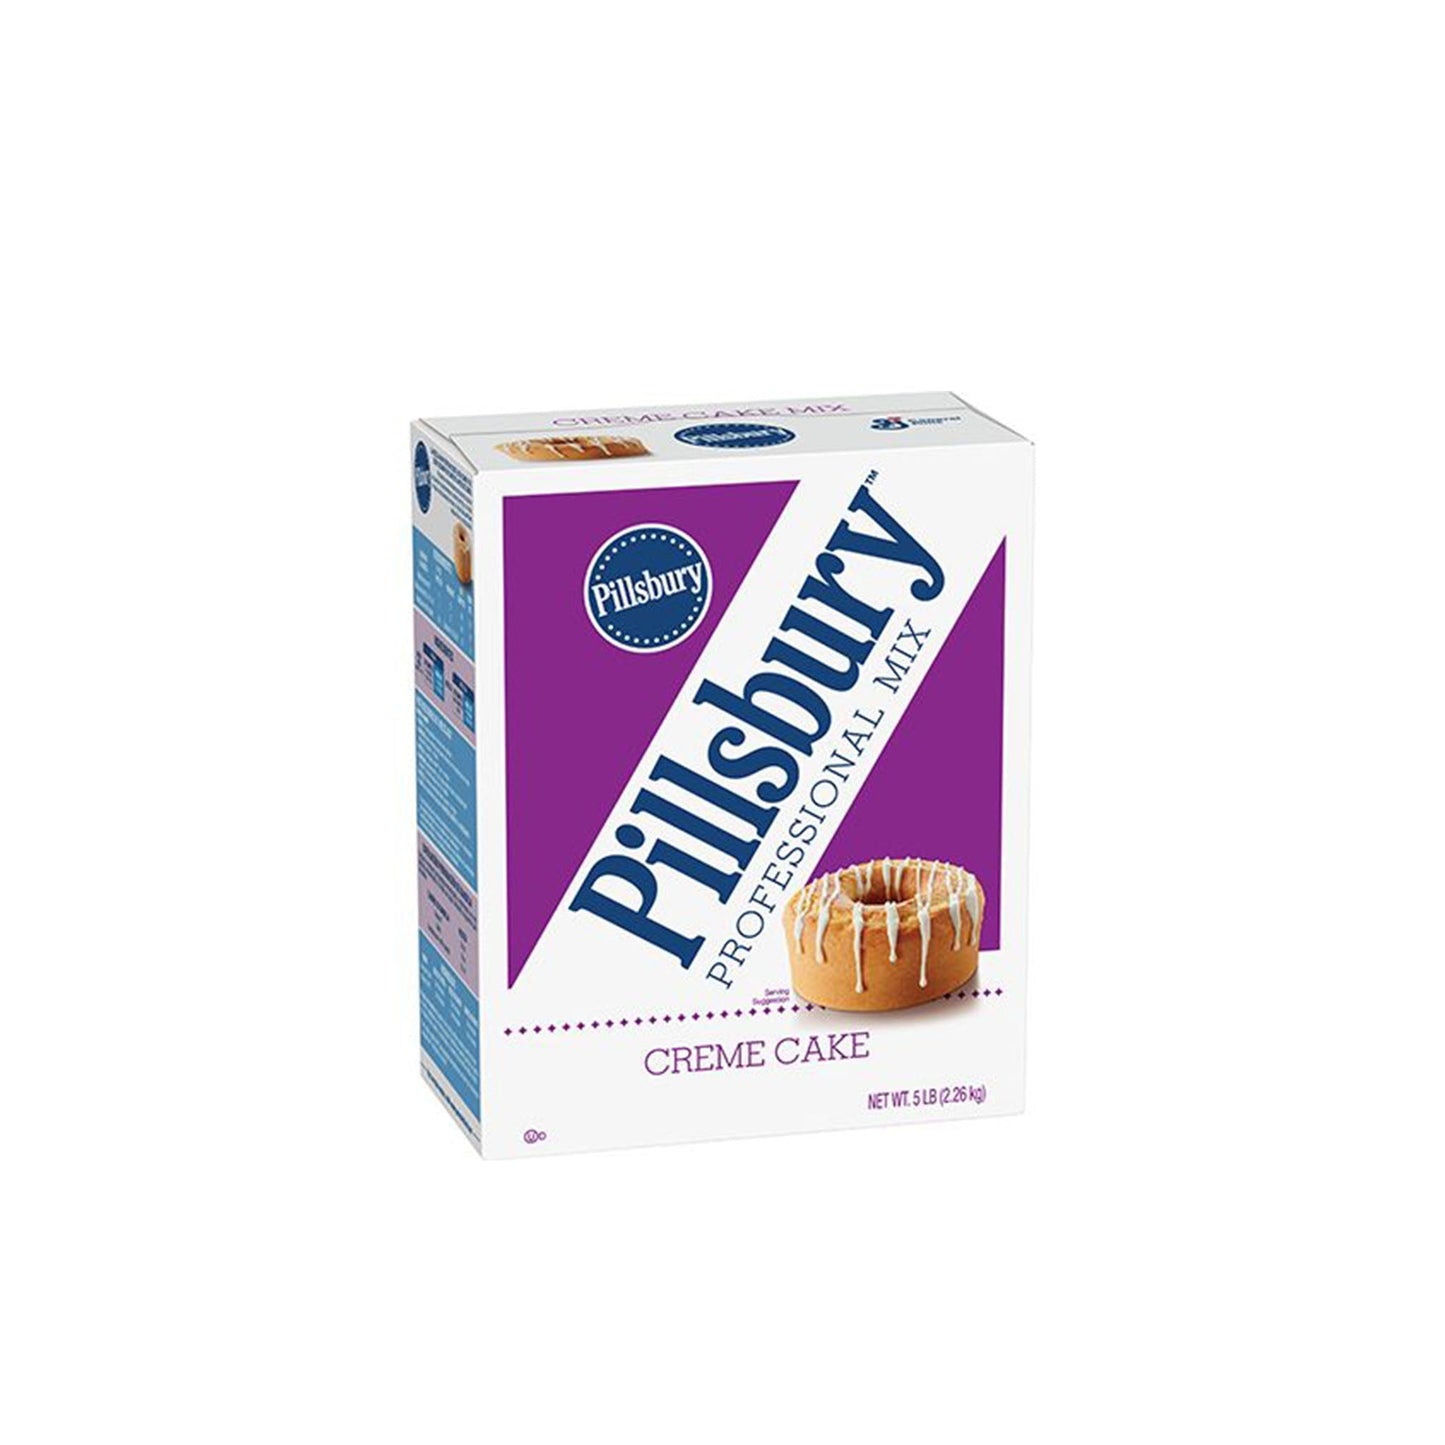 Pillsbury Cream Cake 5 lb